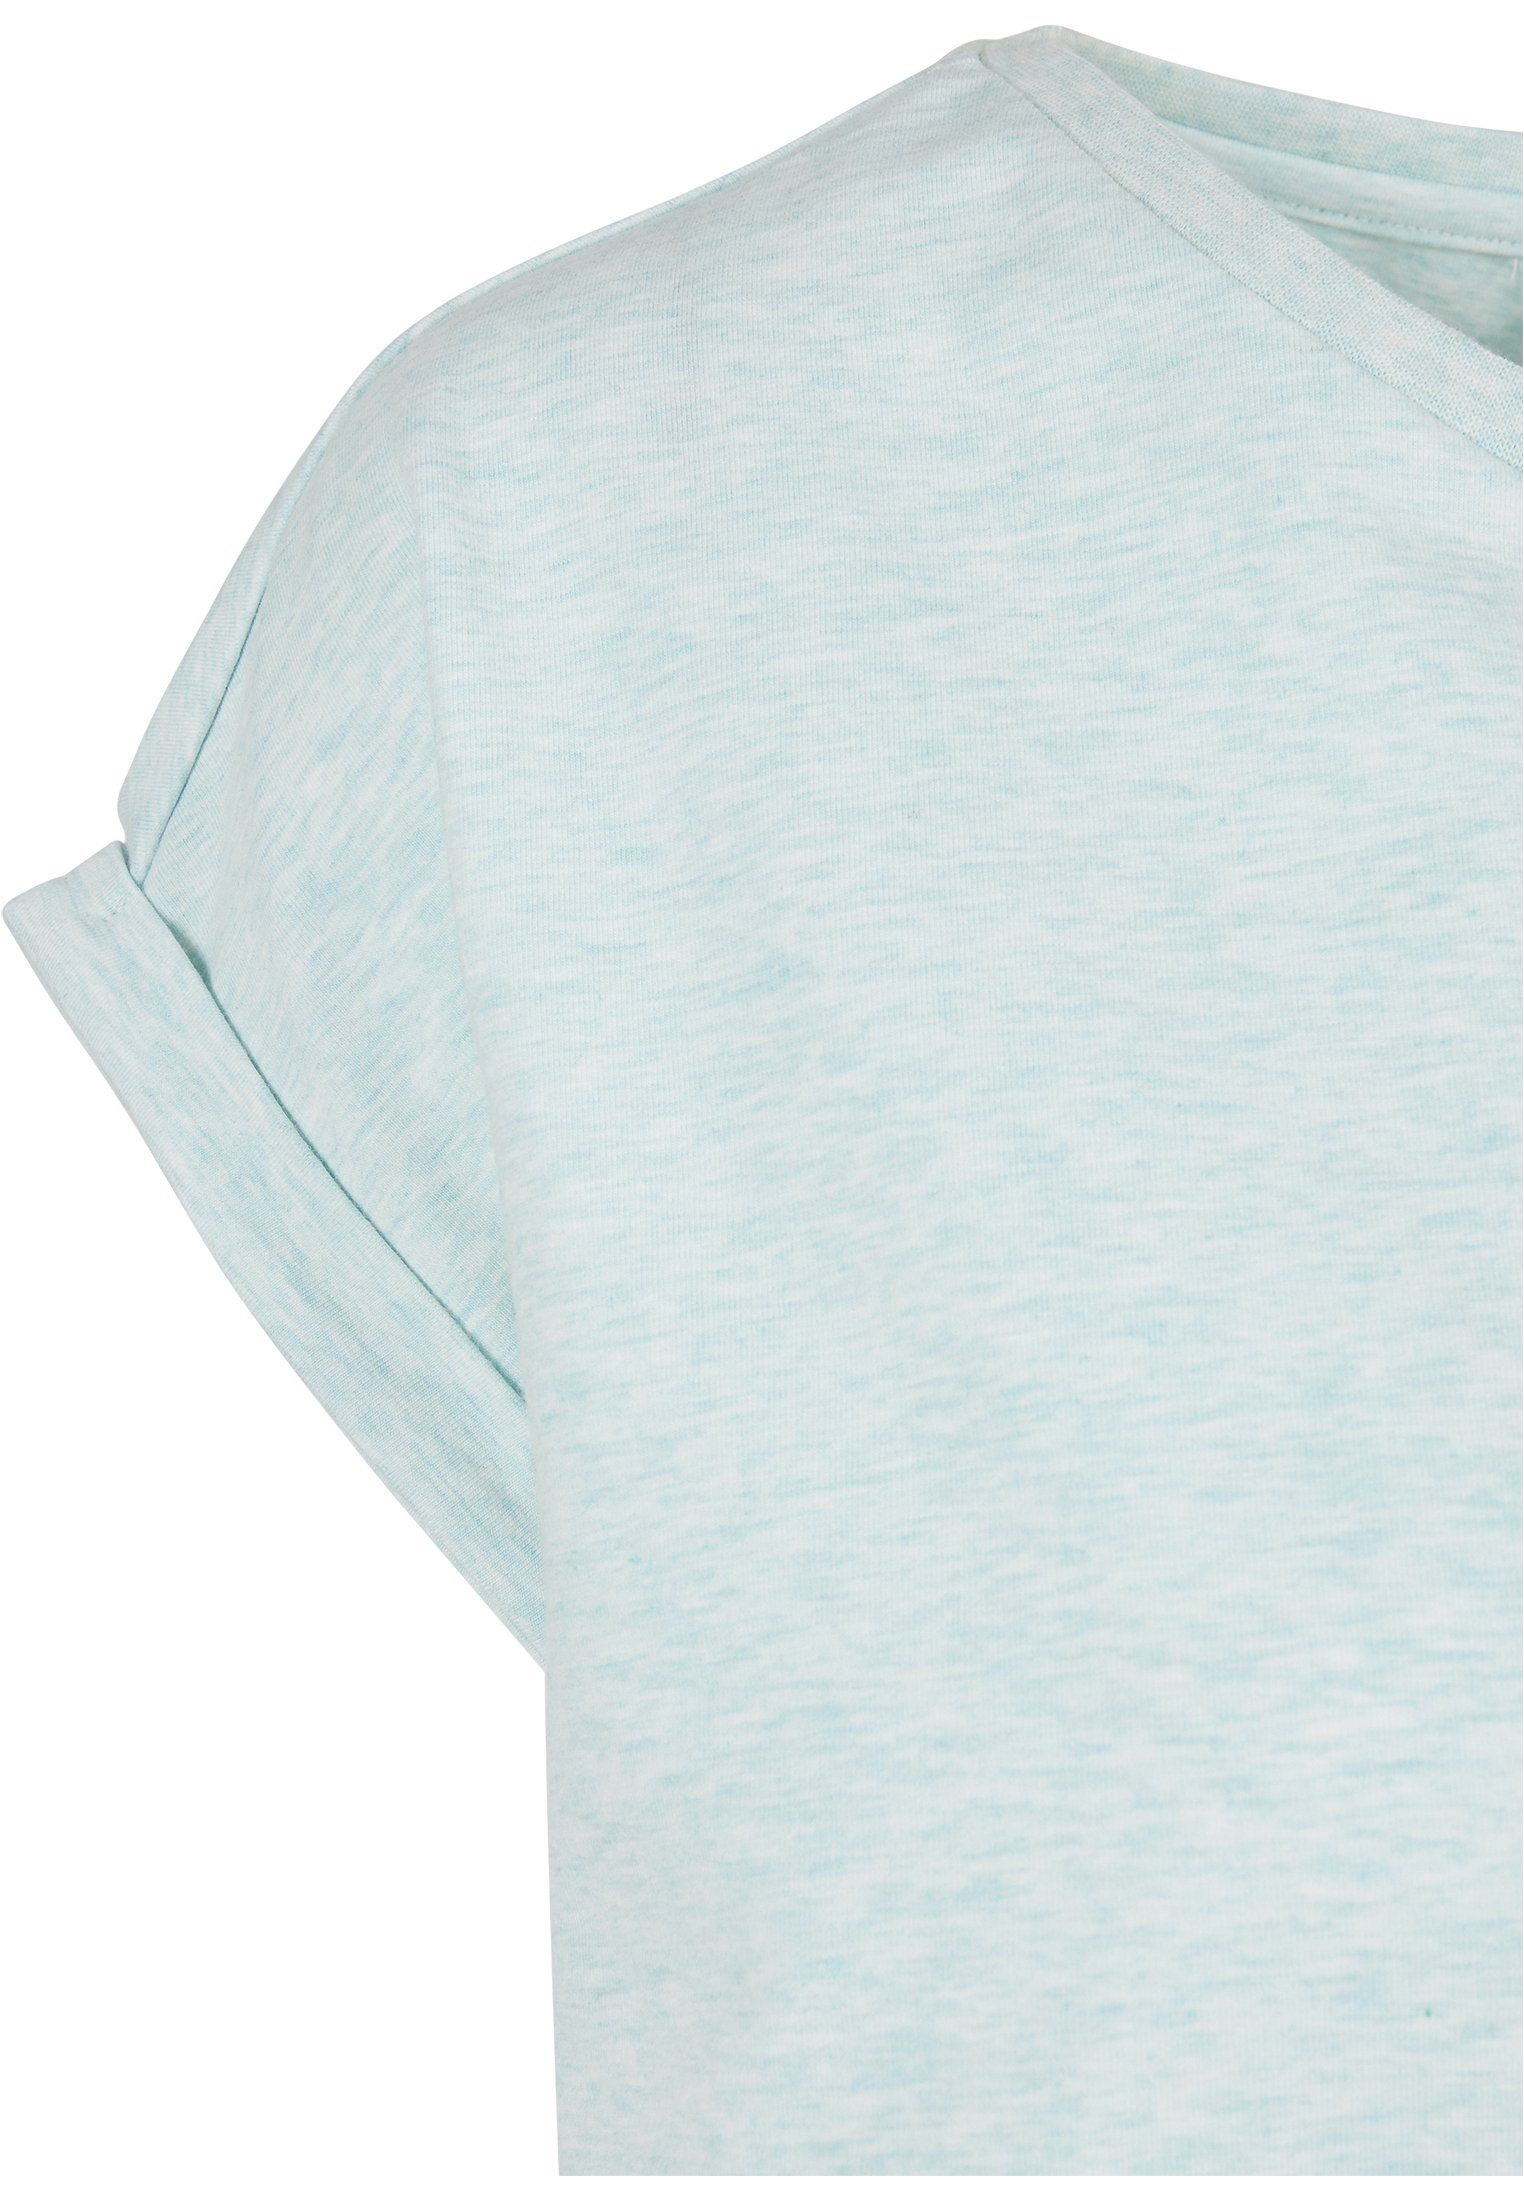 URBAN CLASSICS Kurzarmshirt (1-tlg) Extended Ladies Color aqua melange Tee Shoulder Melange Frauen